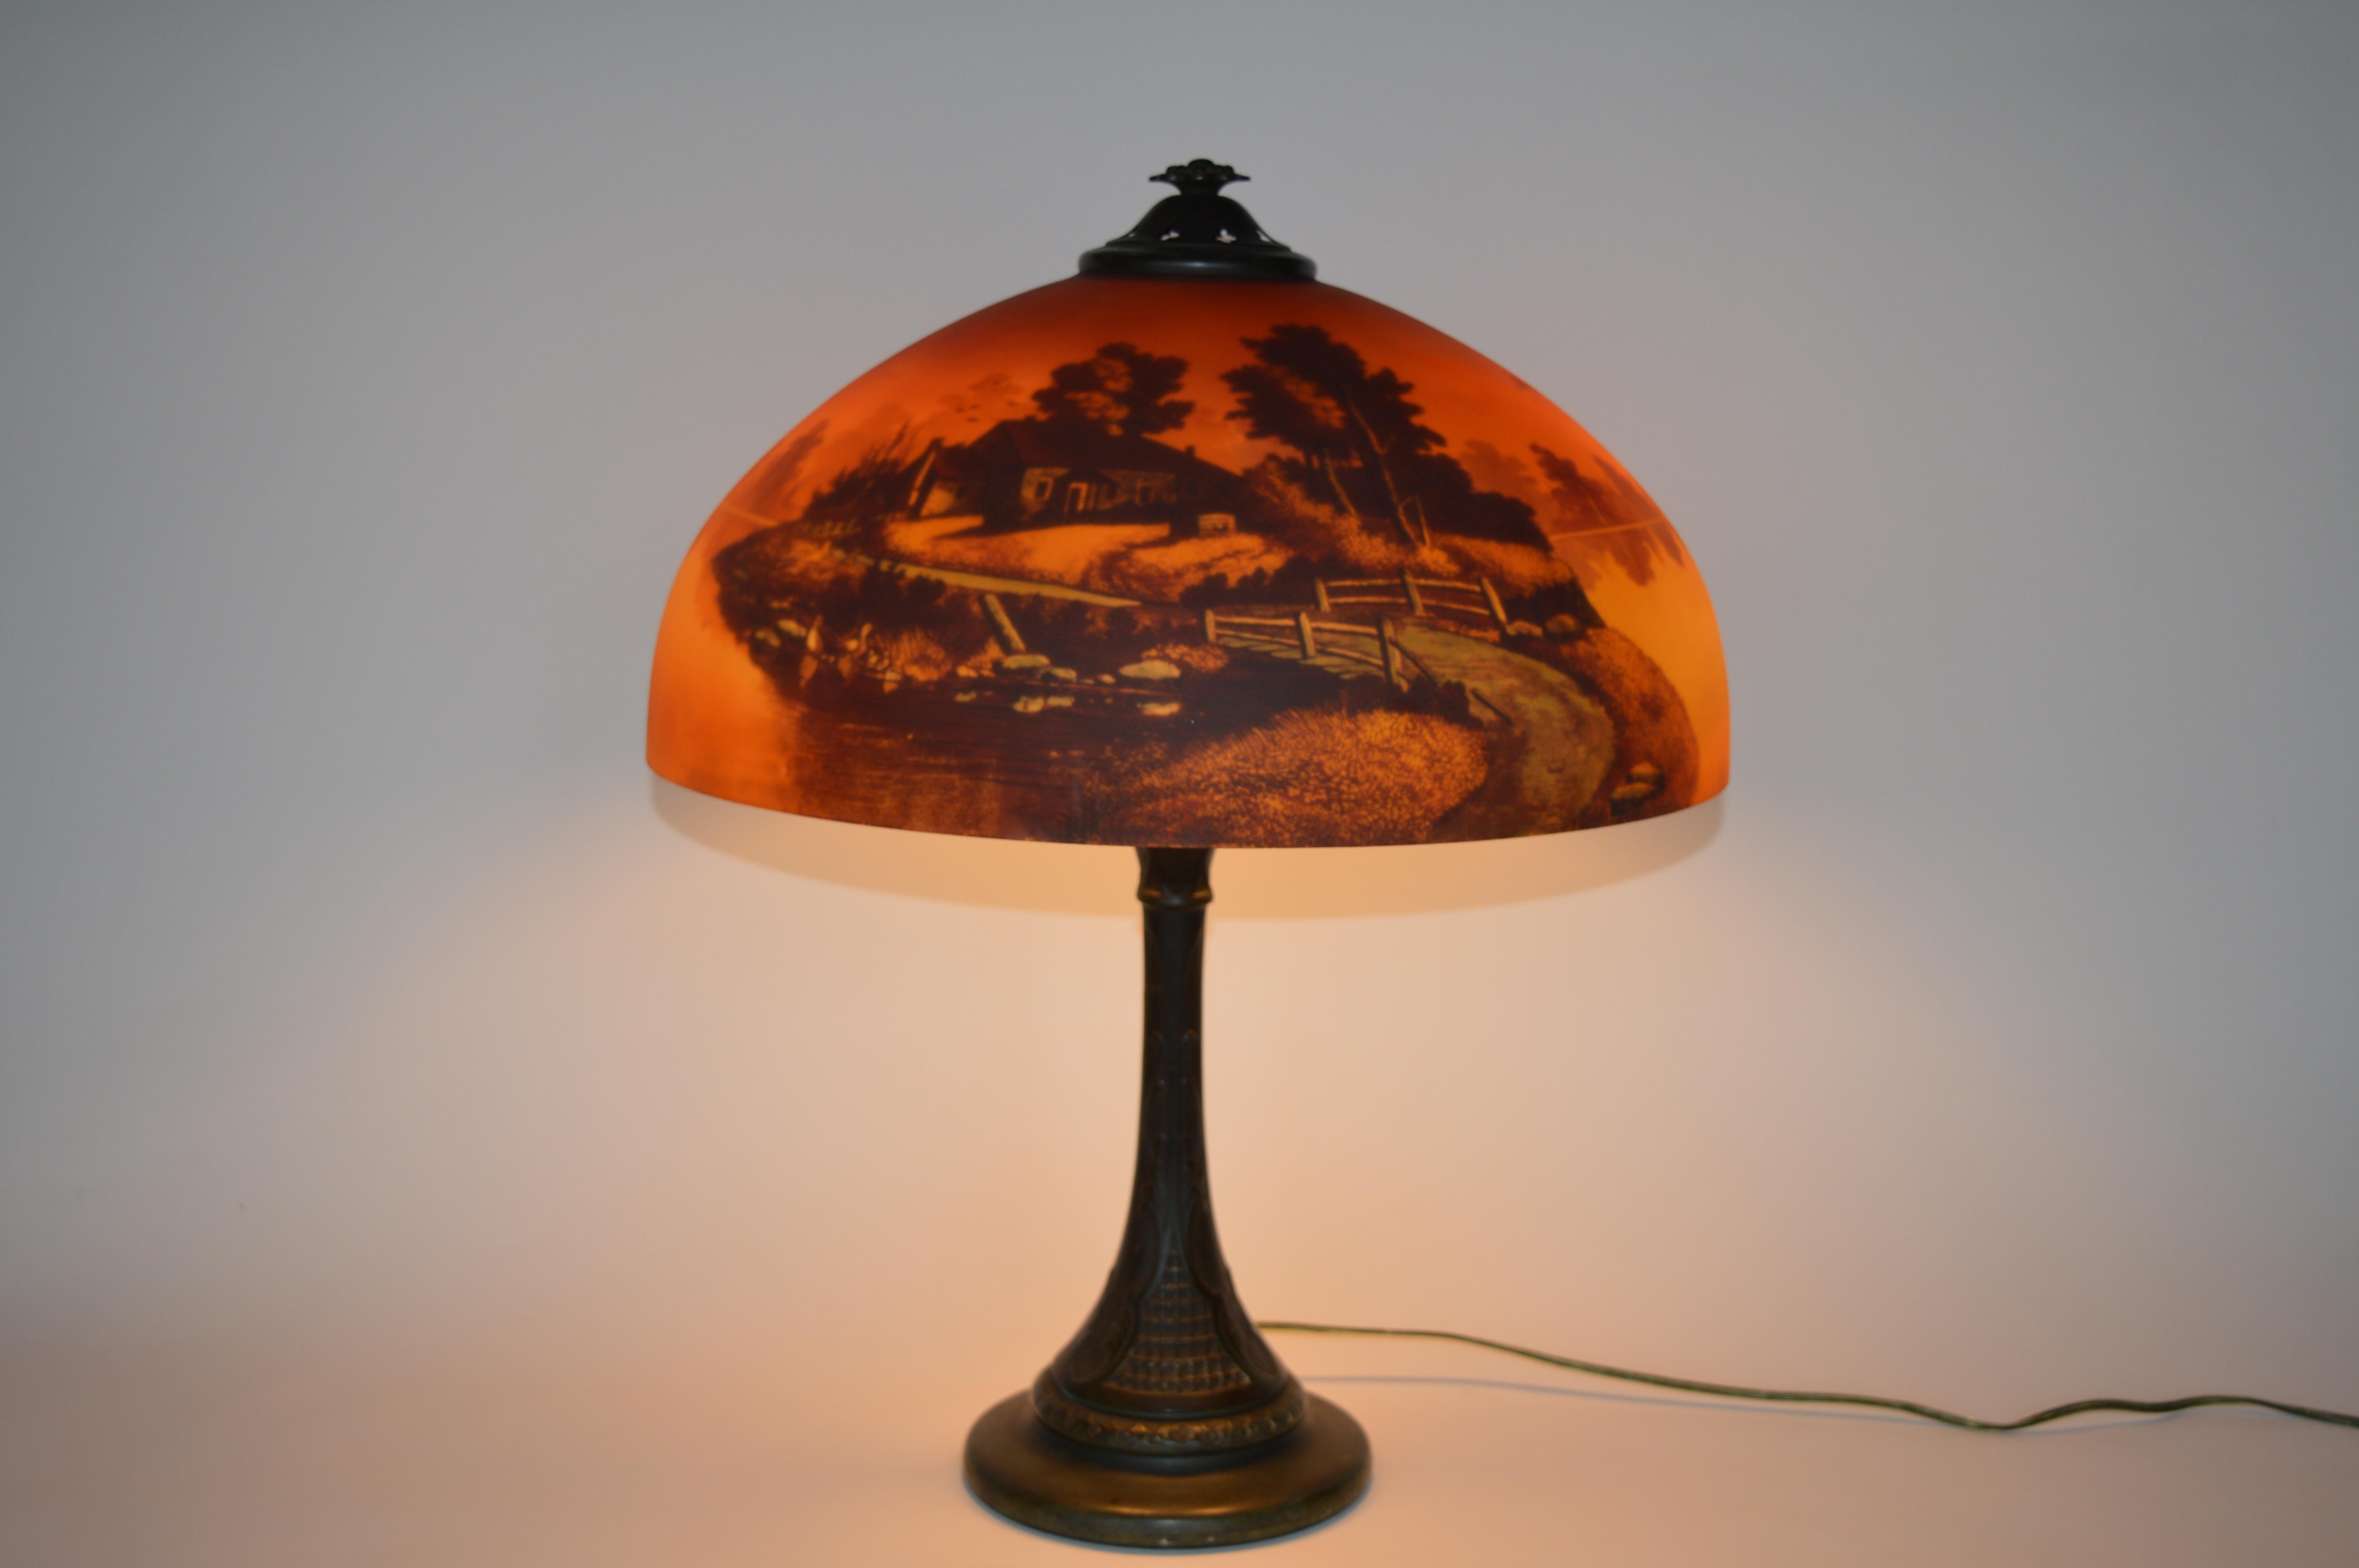 Lampe de table paysage coucher de soleil Phoenix,
vers les années 1920, abat-jour en verre peint à l'envers avec une base en métal patiné. L'abat-jour représente un paysage rural de chalet au coucher du soleil. 21 pouces de hauteur totale,